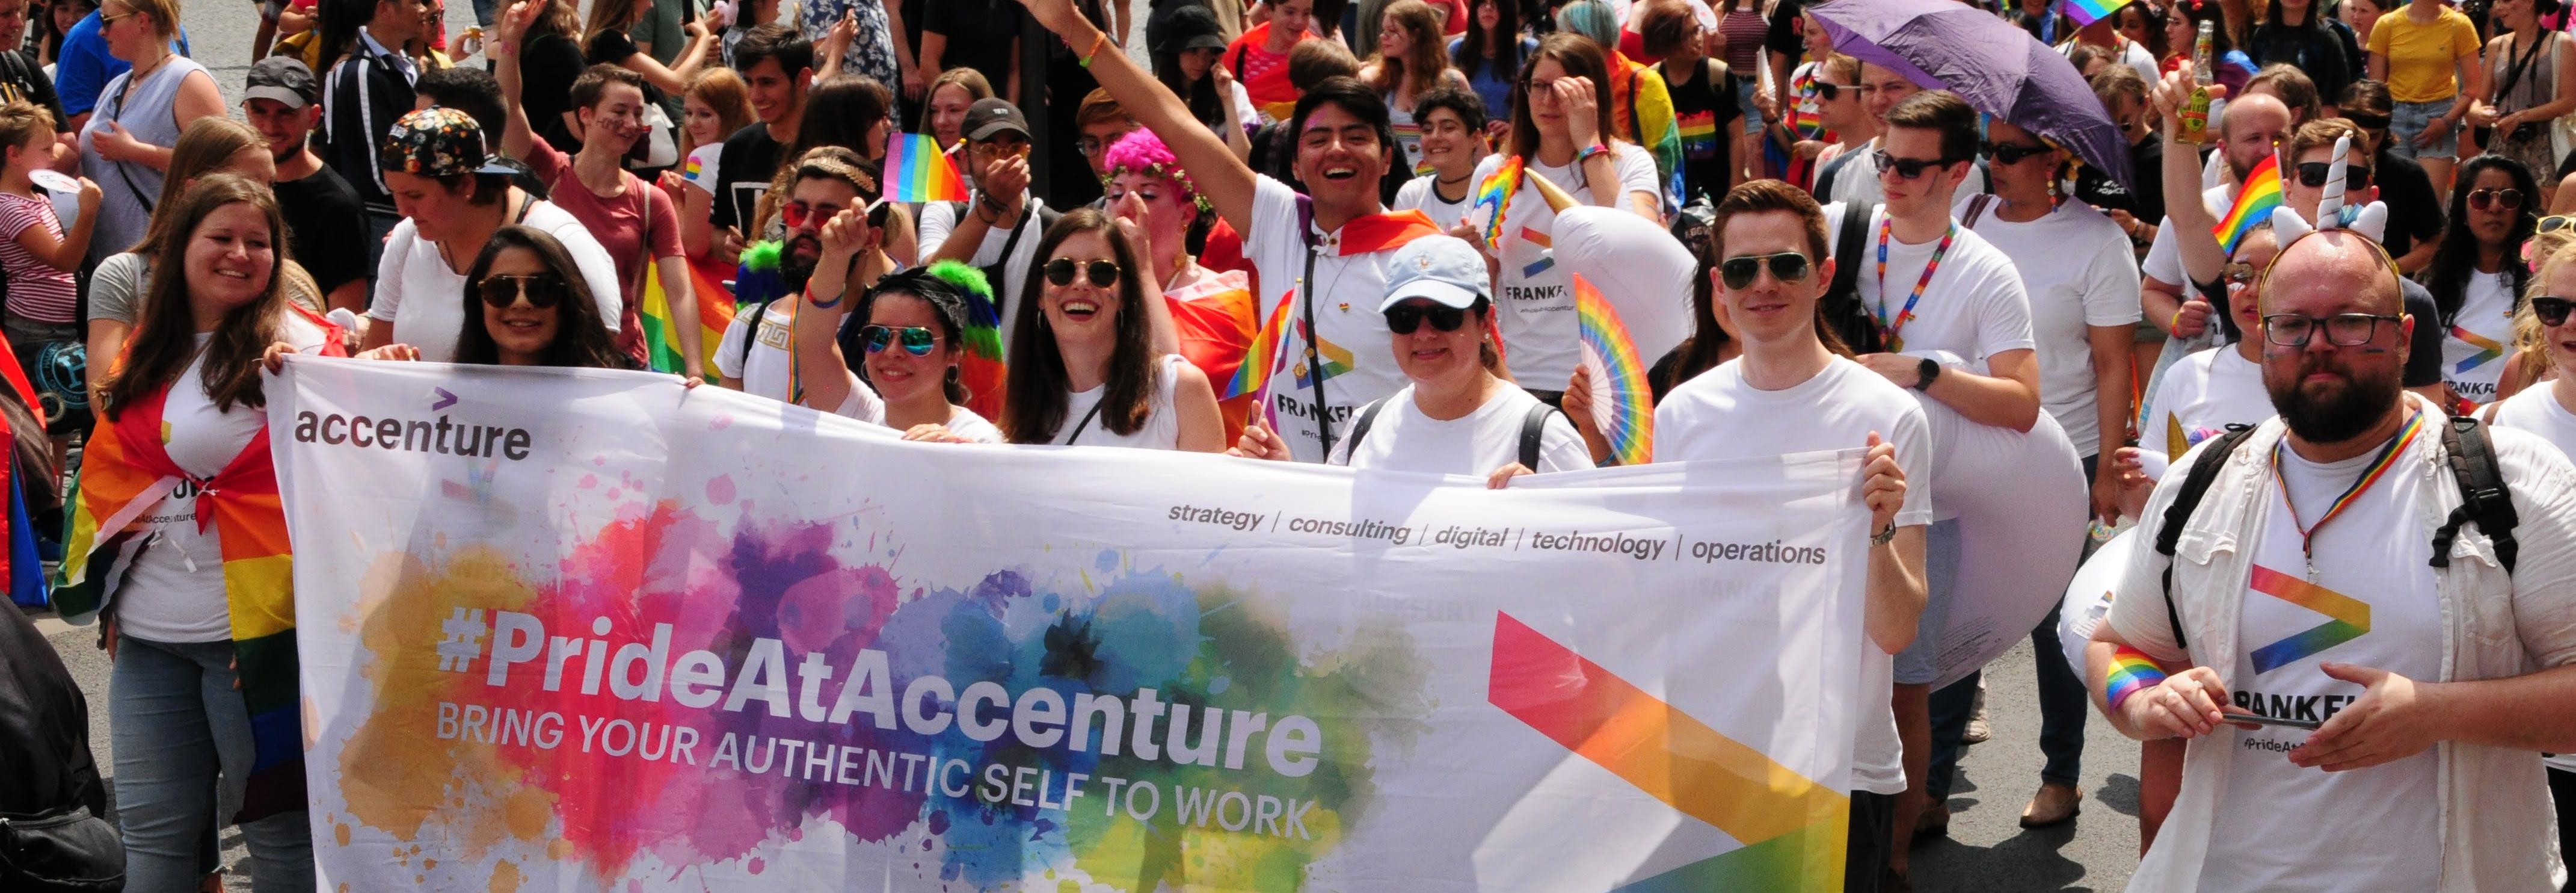 Auf dem Bild sind viele Personen zu sehen, die gemeinsam ein Banner halten auf dem #PrideAtAccenture steht. Sie tragen weiße Kleidung, passende T-Shirts und haben zum Teil Schilder oder Regenbogenfahnen in der Hand. 